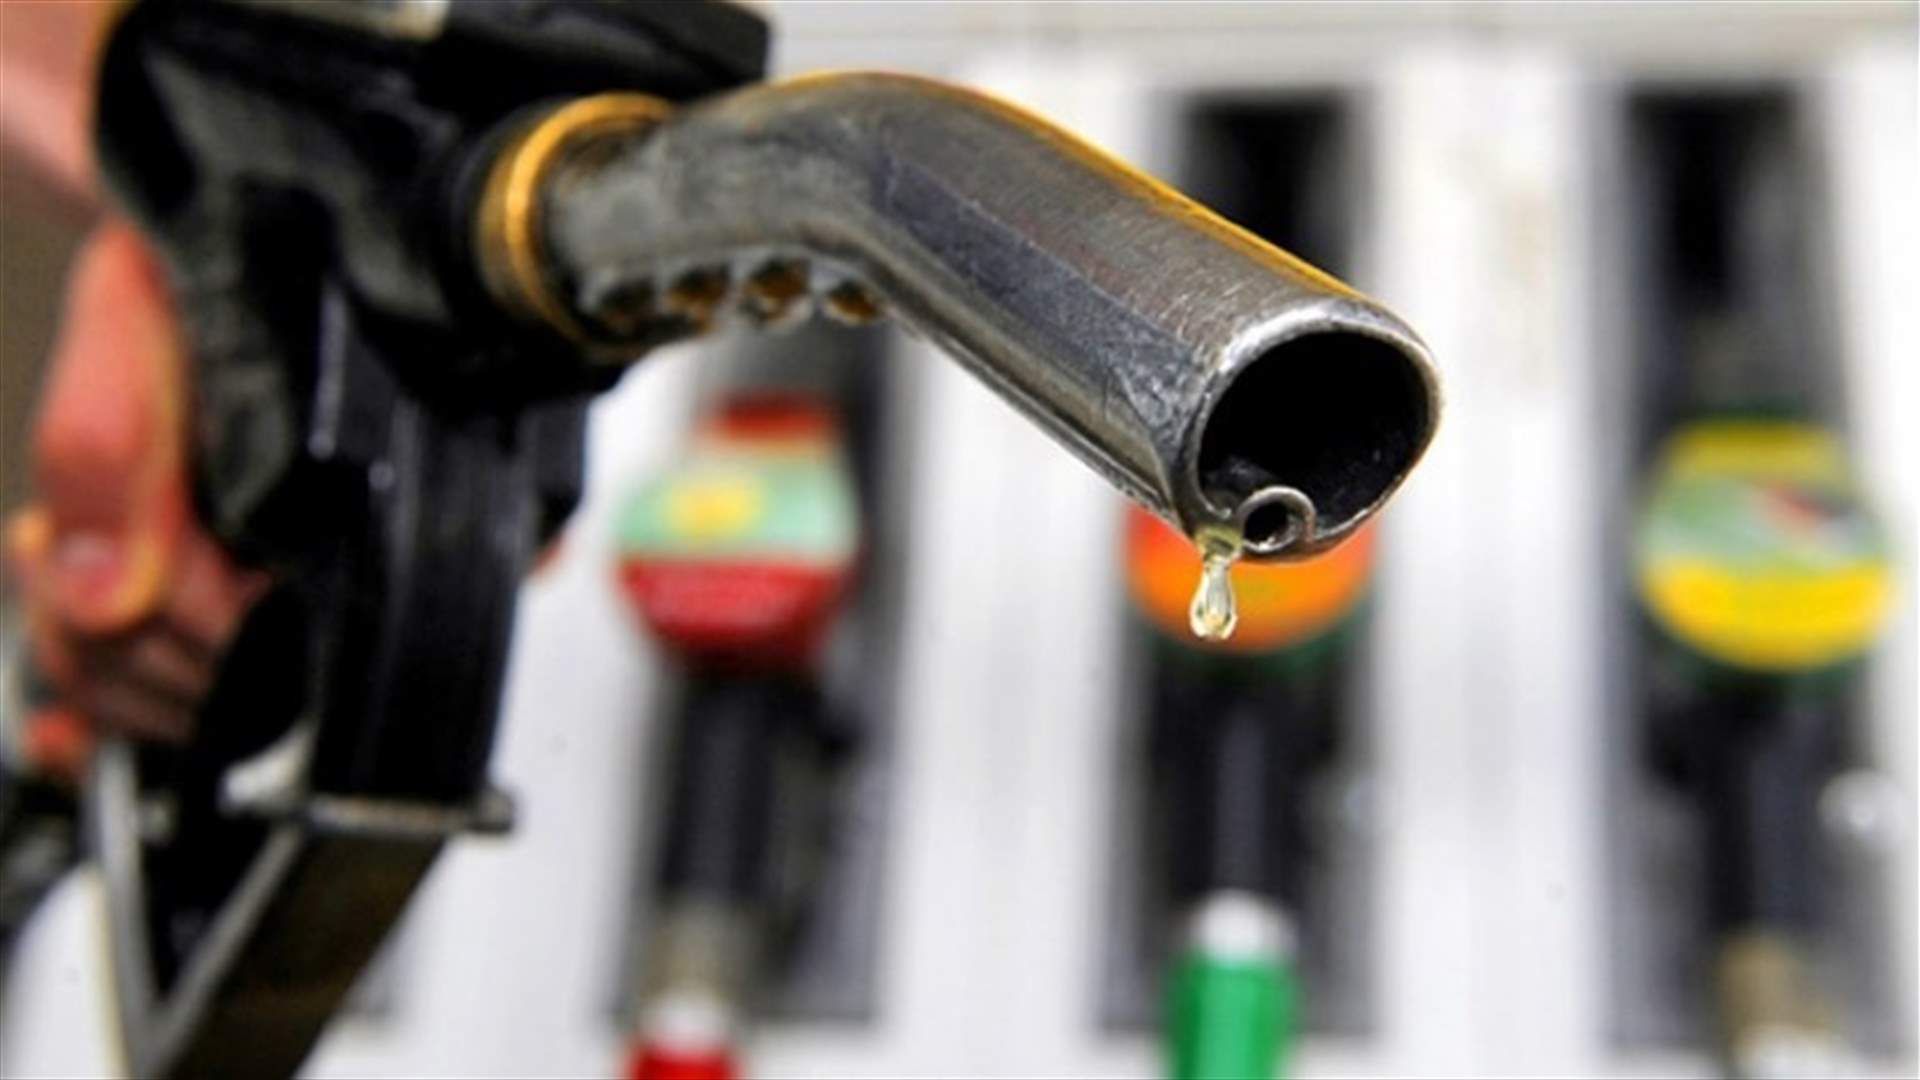 Gasoline price drops in Lebanon